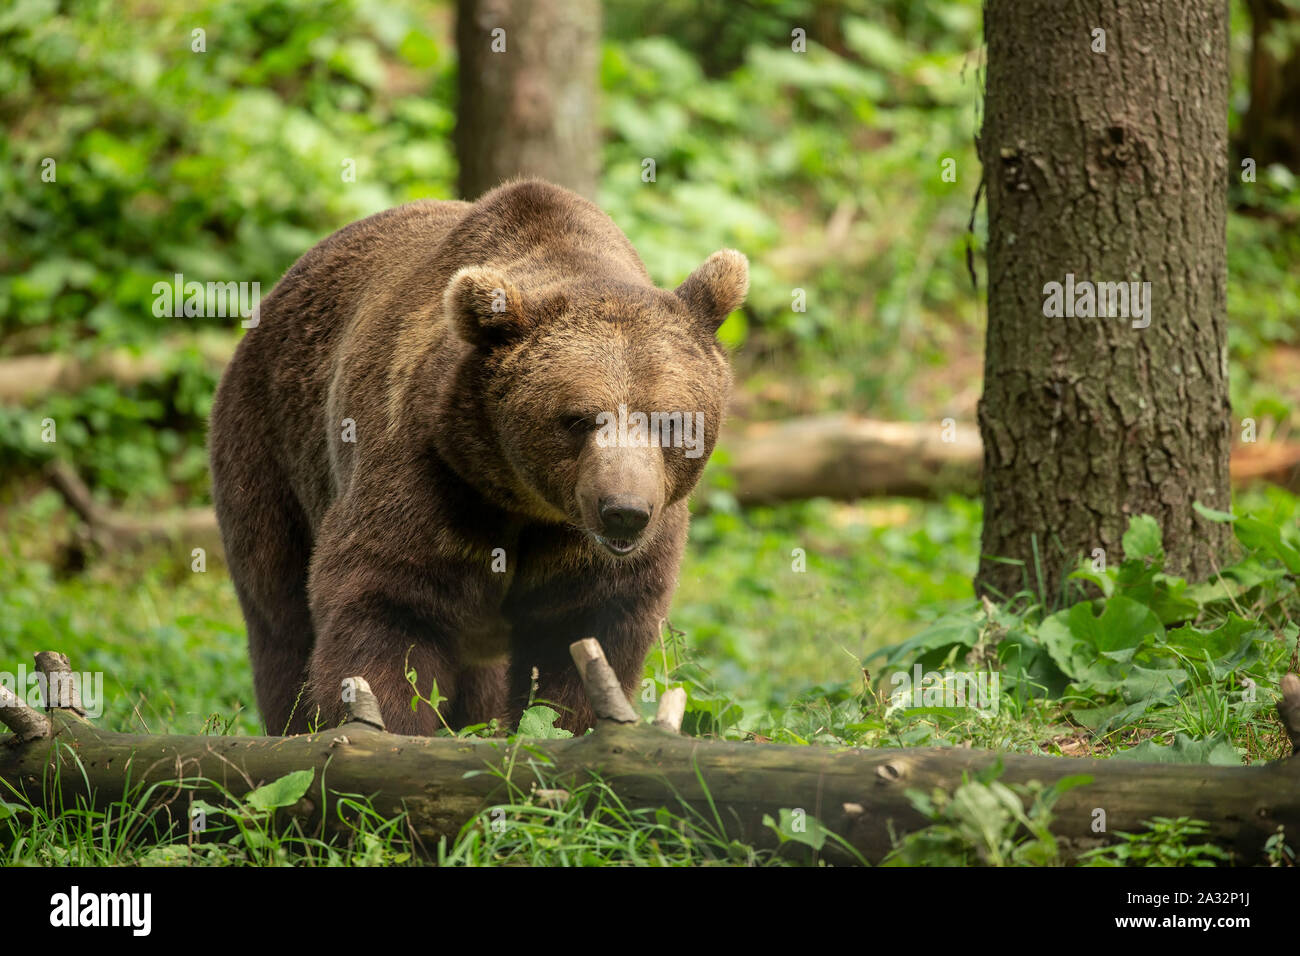 L'ours brun (Ursus arctos) dans son milieu naturel l'habitat forestier de scènes naturelles Banque D'Images